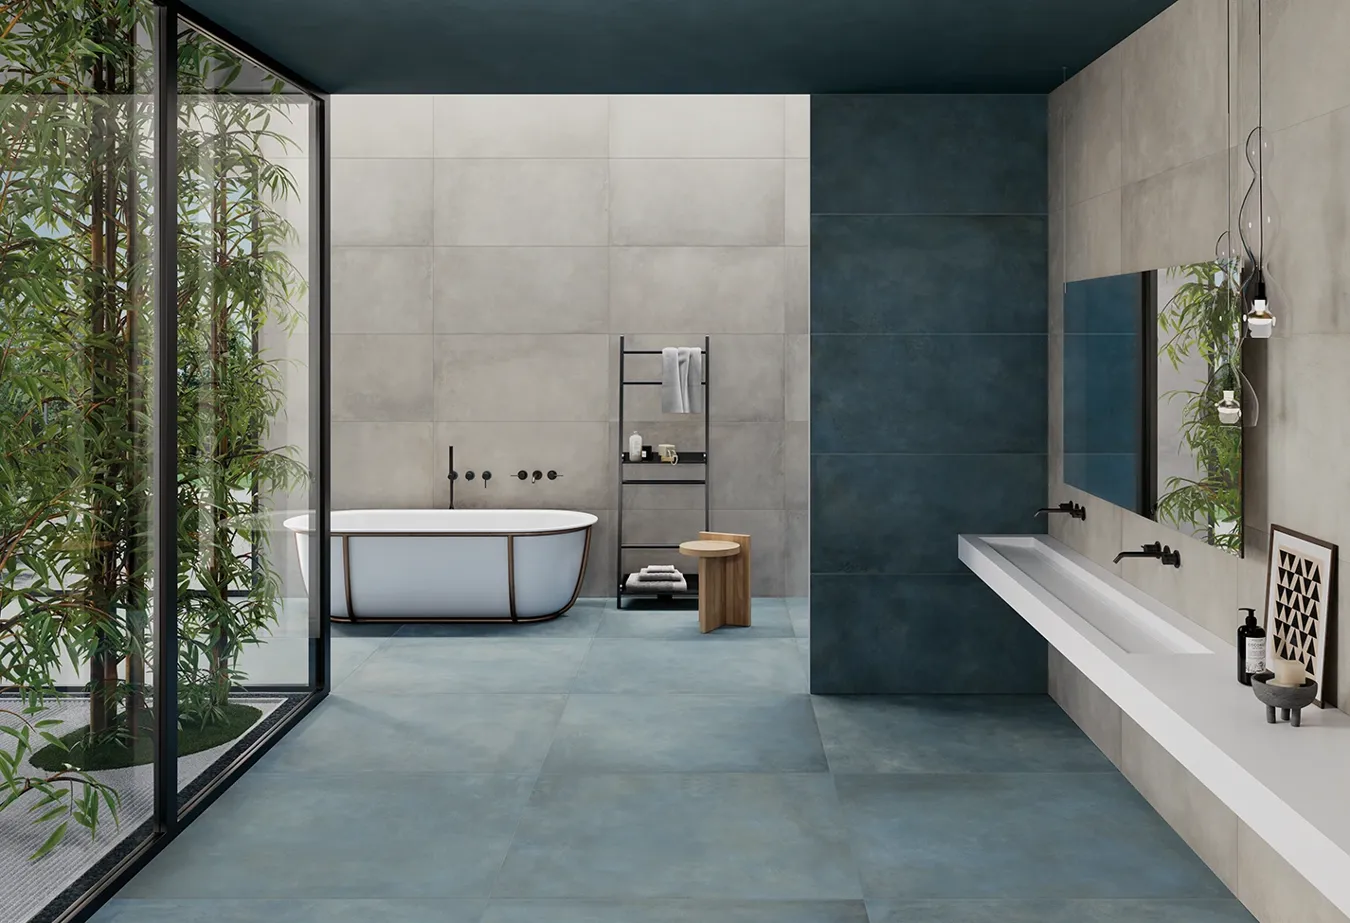 Bagno minimalista con piastrelle effetto metallo della collezione Plate, pavimento colore Titanium e arredi eleganti.